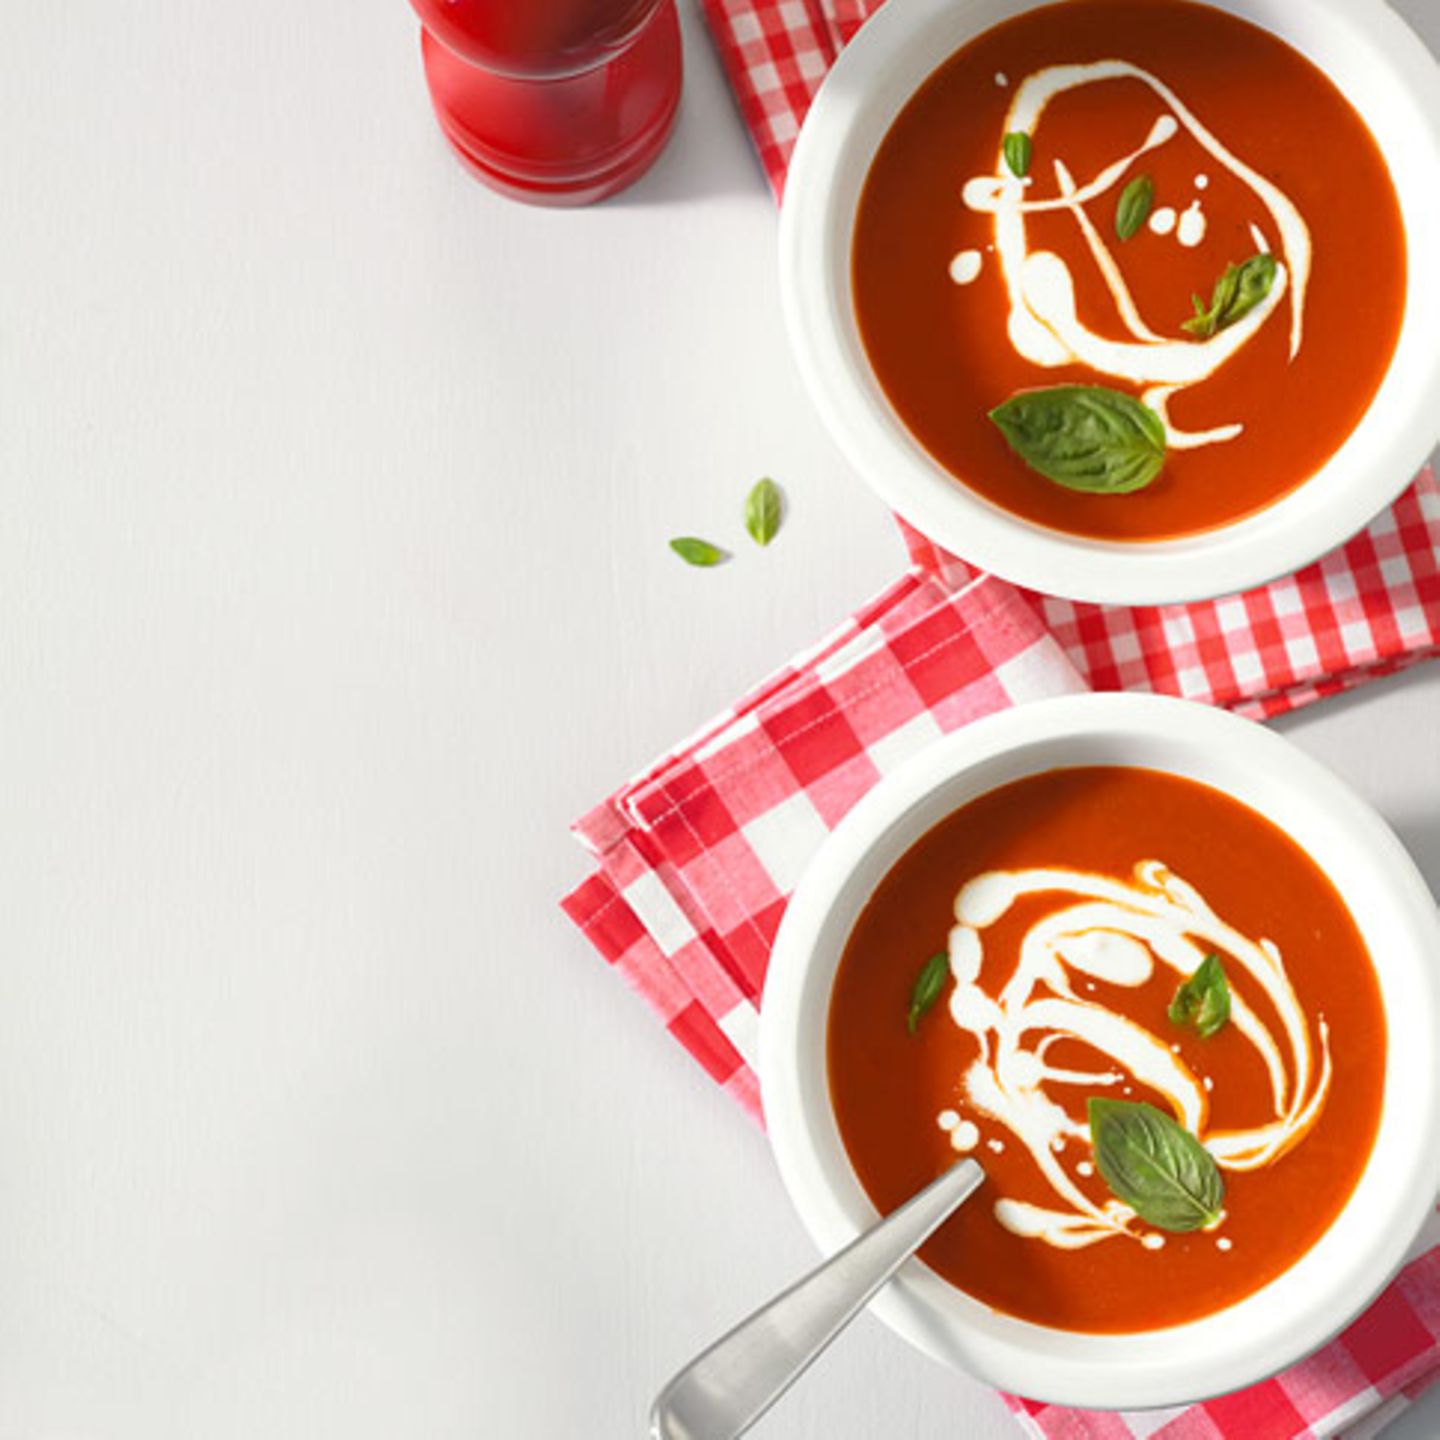 Tomaten-Paprika-Suppe